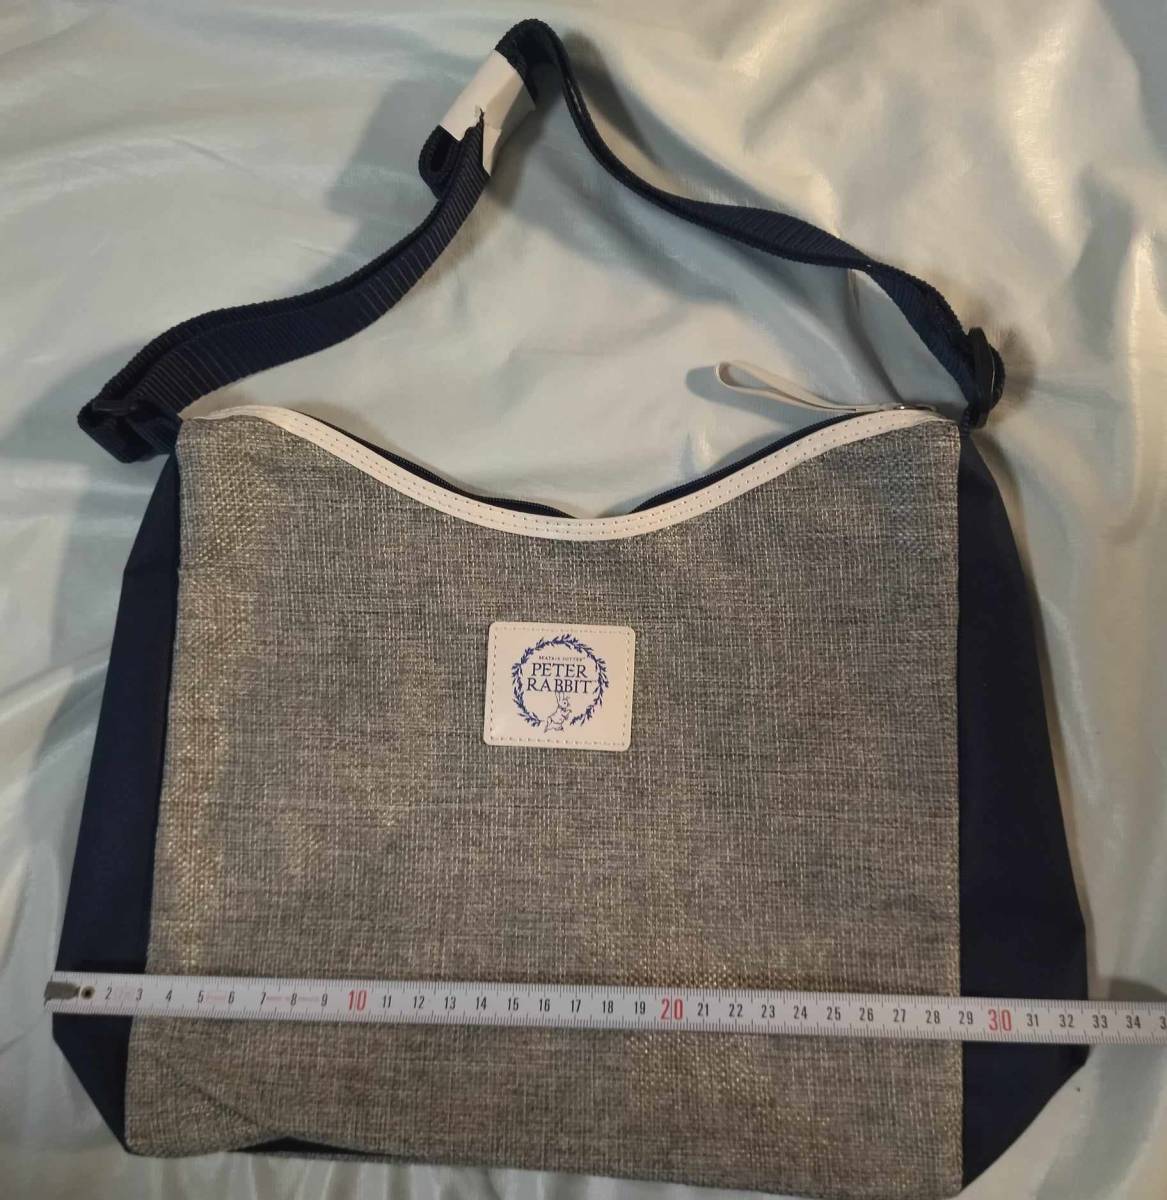 非売品 三菱UFJ信託銀行 限定 ピーターラビット ショルダーバックバッグ Mitsubishi UFJ Trust and Banking Peter Rabbit shoulder bag